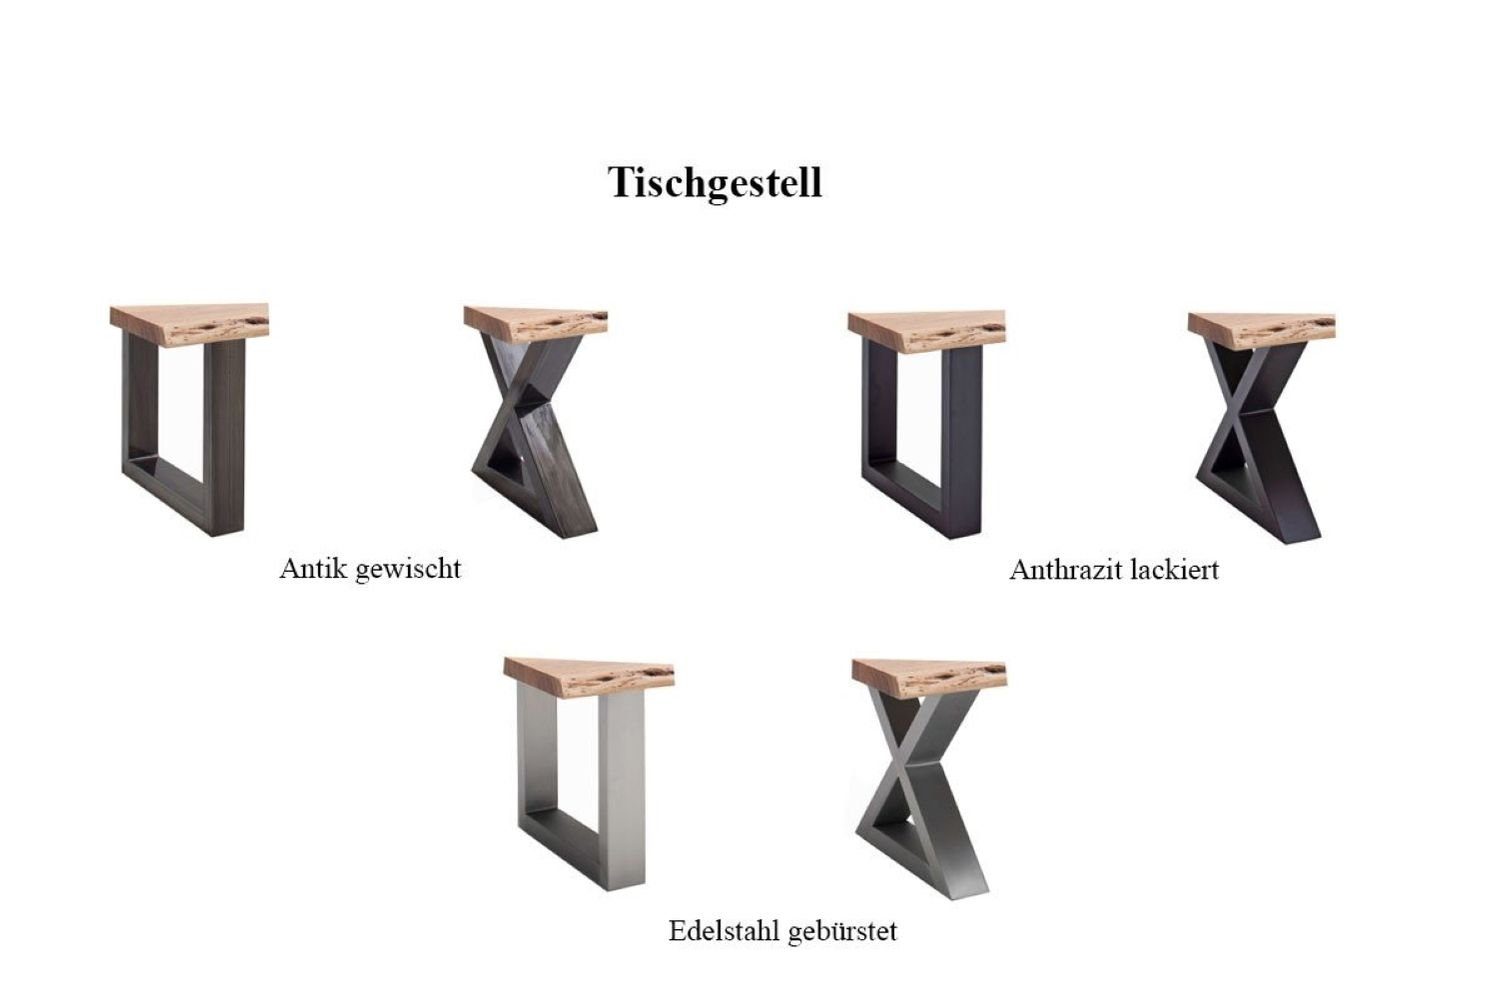 quadratisch Baumkante furniture Cartagen, Couchtisch grau MCA Akazie-massiv U-Form